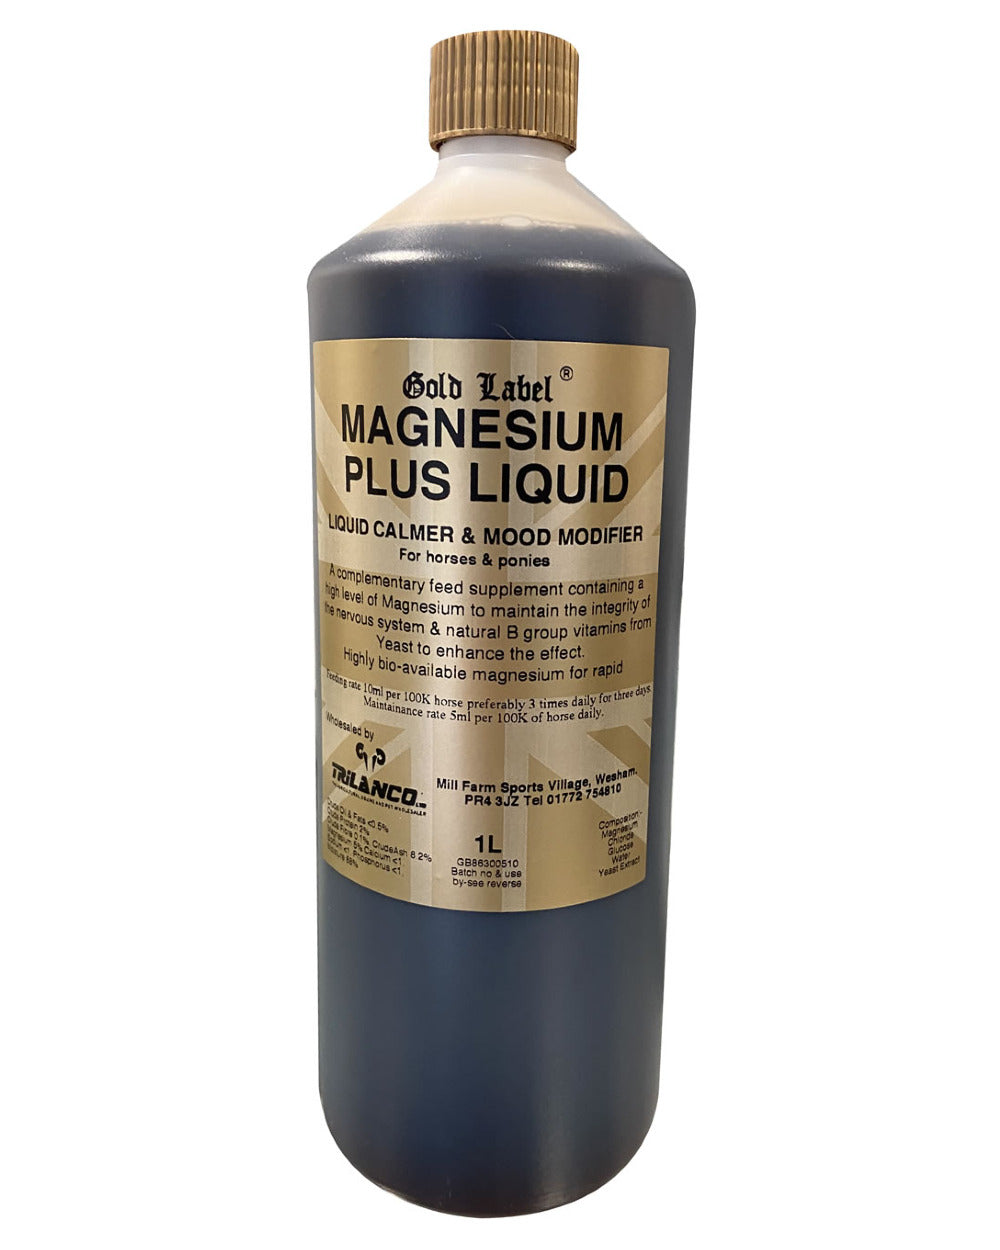 Gold Label Magnesium Plus Liquid On A White Background